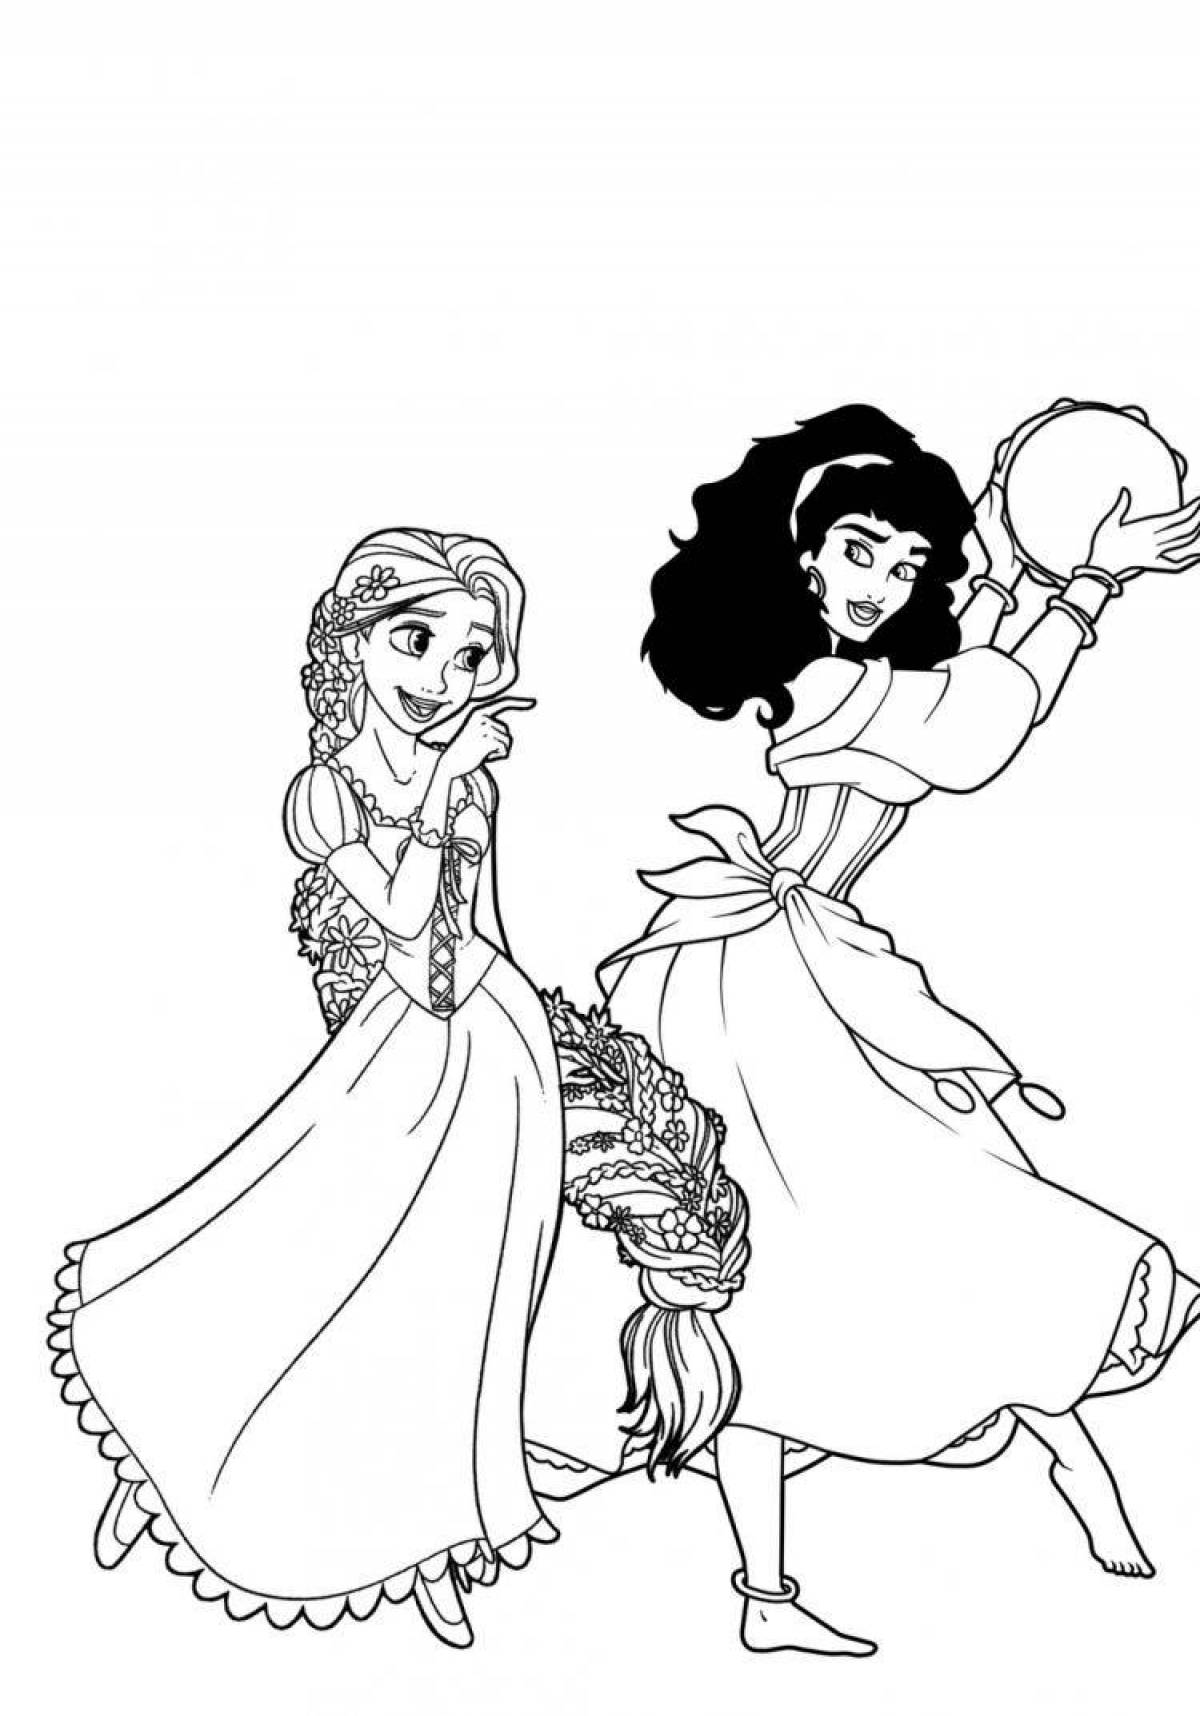 Coloring page charming esmeralda